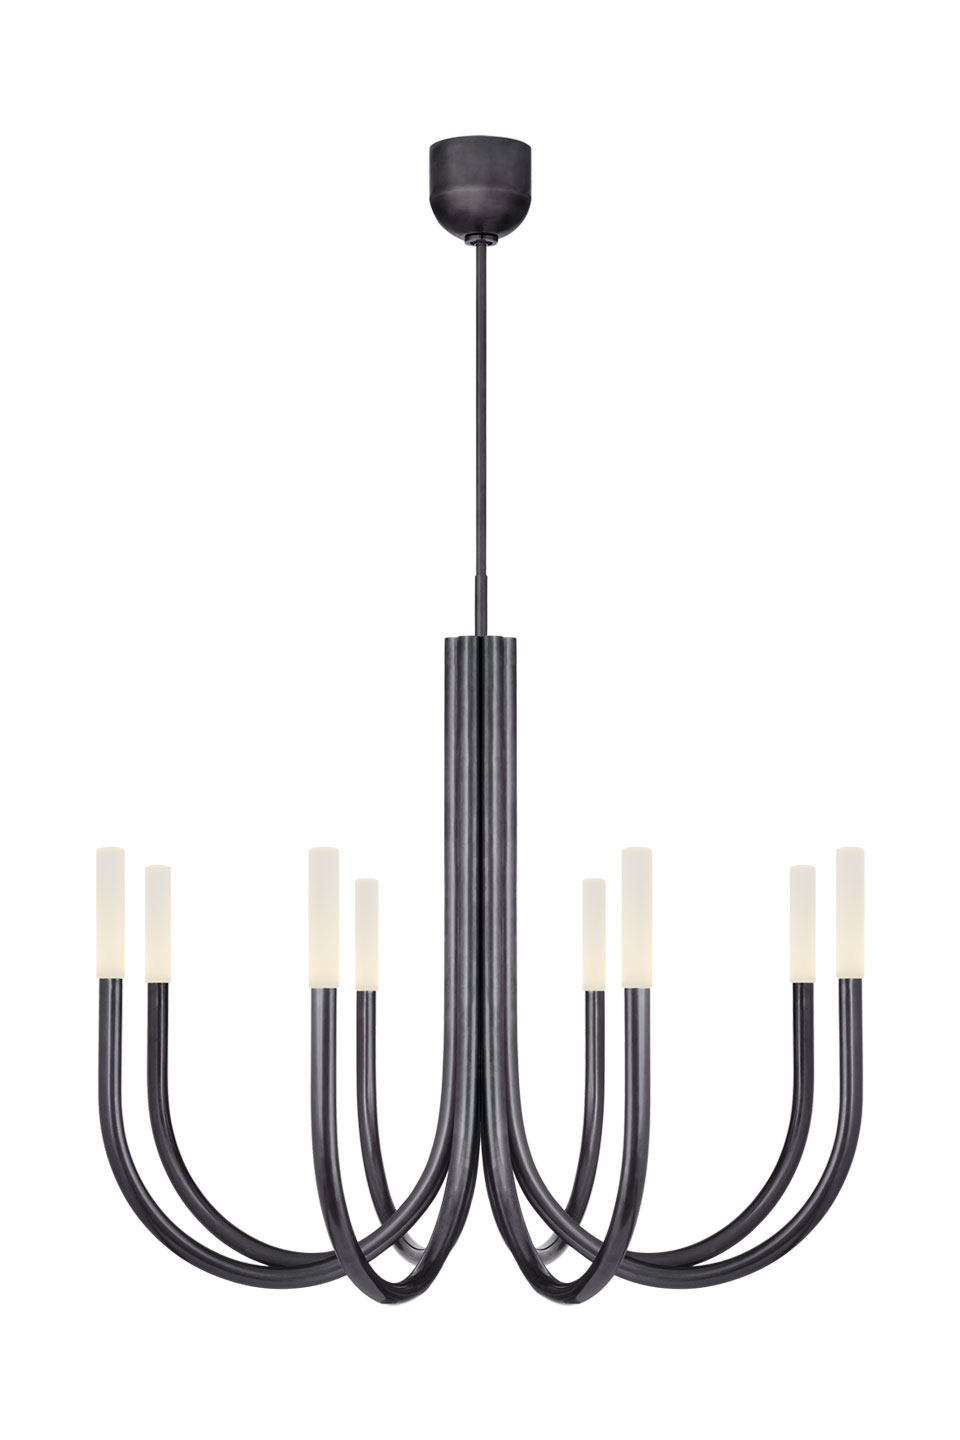 Rousseau lustre 8 lumières finition bronze noir. Visual Comfort&Co.. 